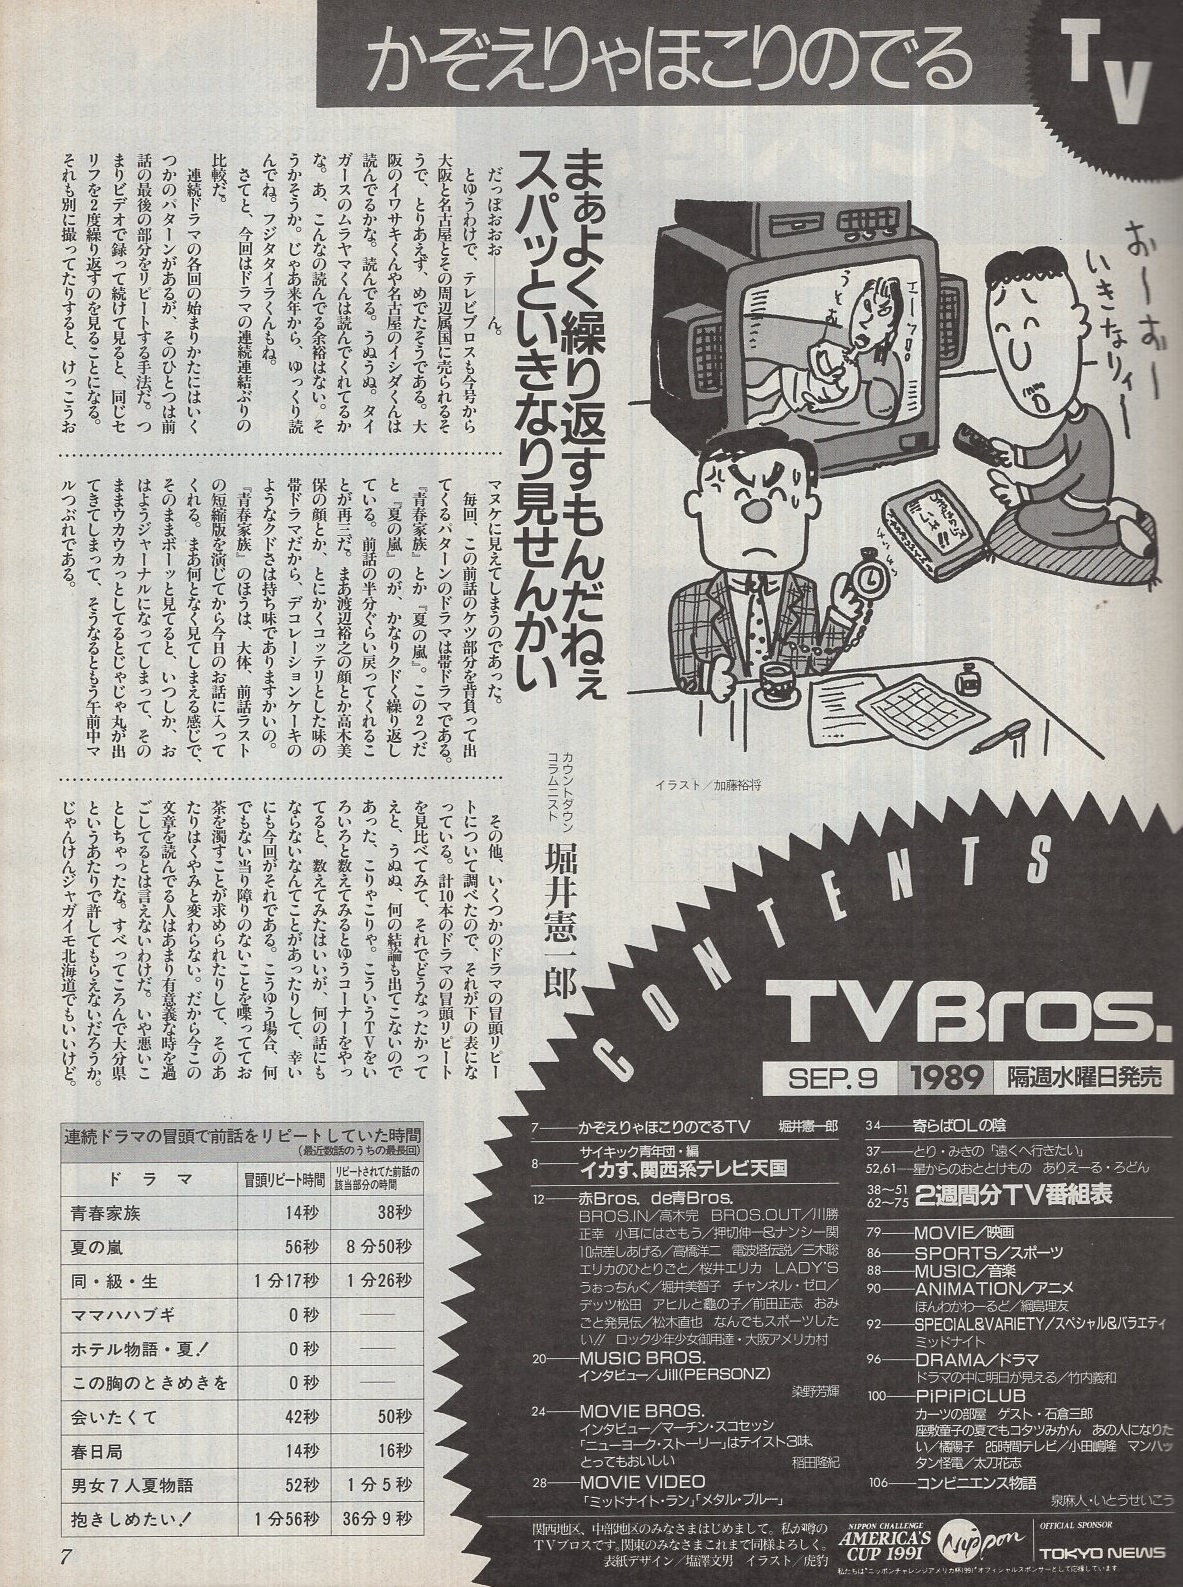 テレビブロス TVBros. 創刊号 平成1年9月9日→9月22日(〈インタビュー